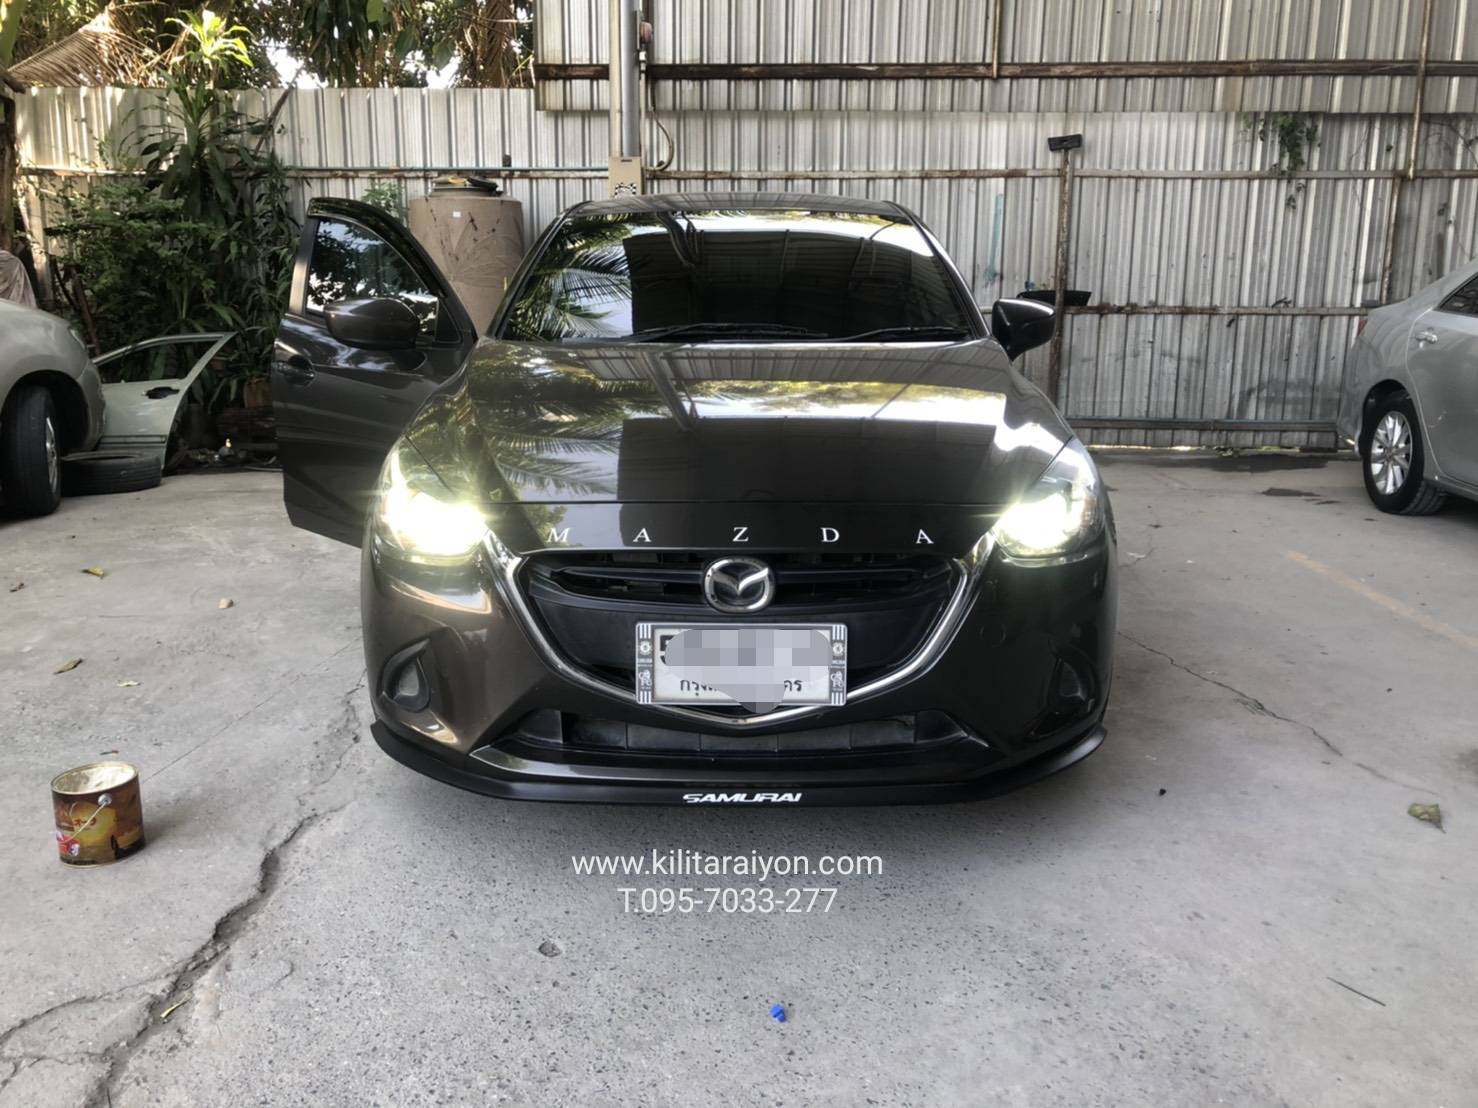 เปลี่ยนไฟหน้า Mazda2 เป็น LED